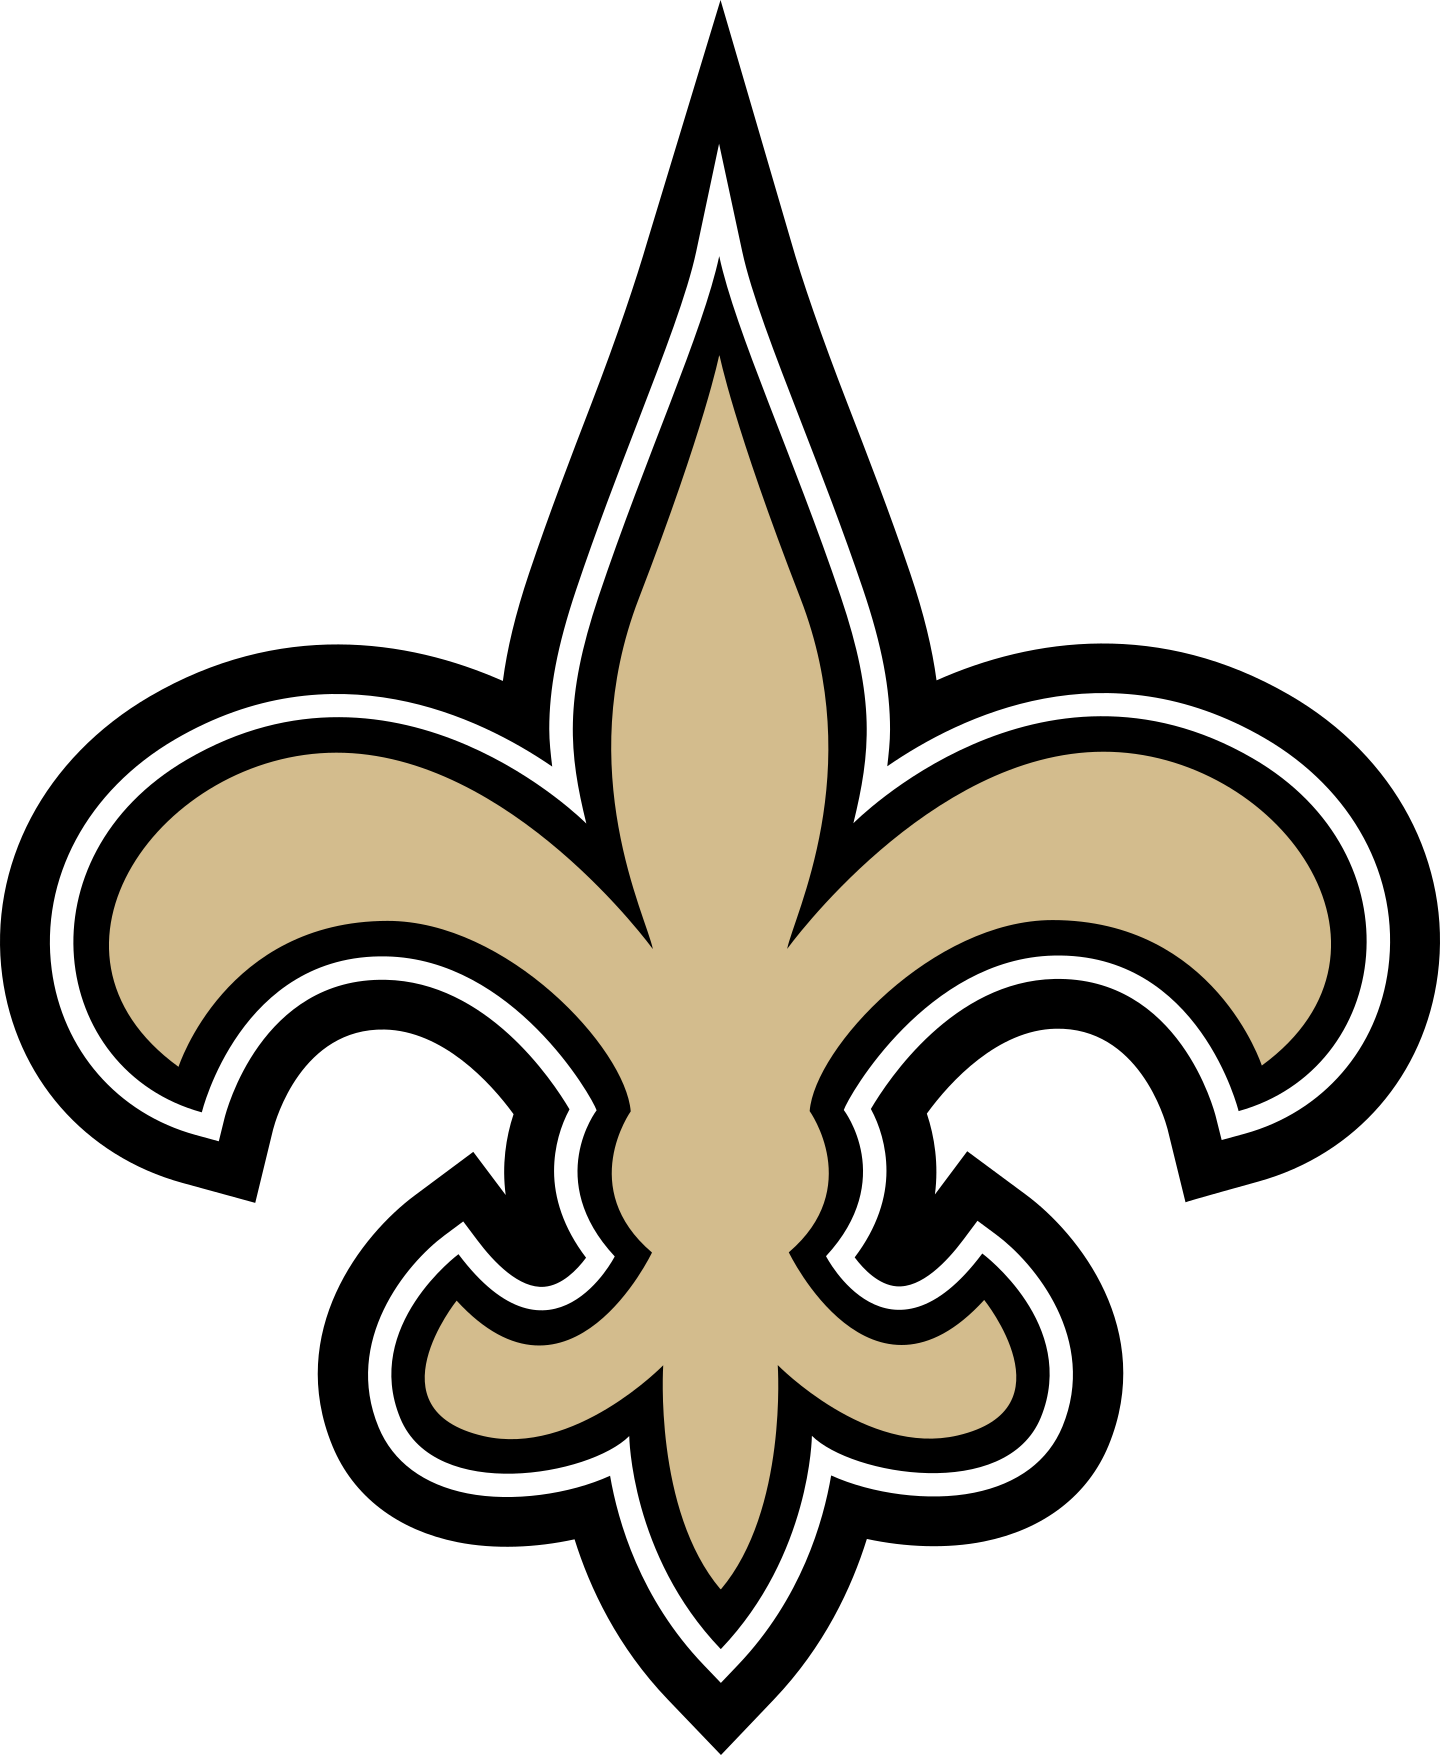 new orleans saints logo 2 - New Orleans Saints Logo